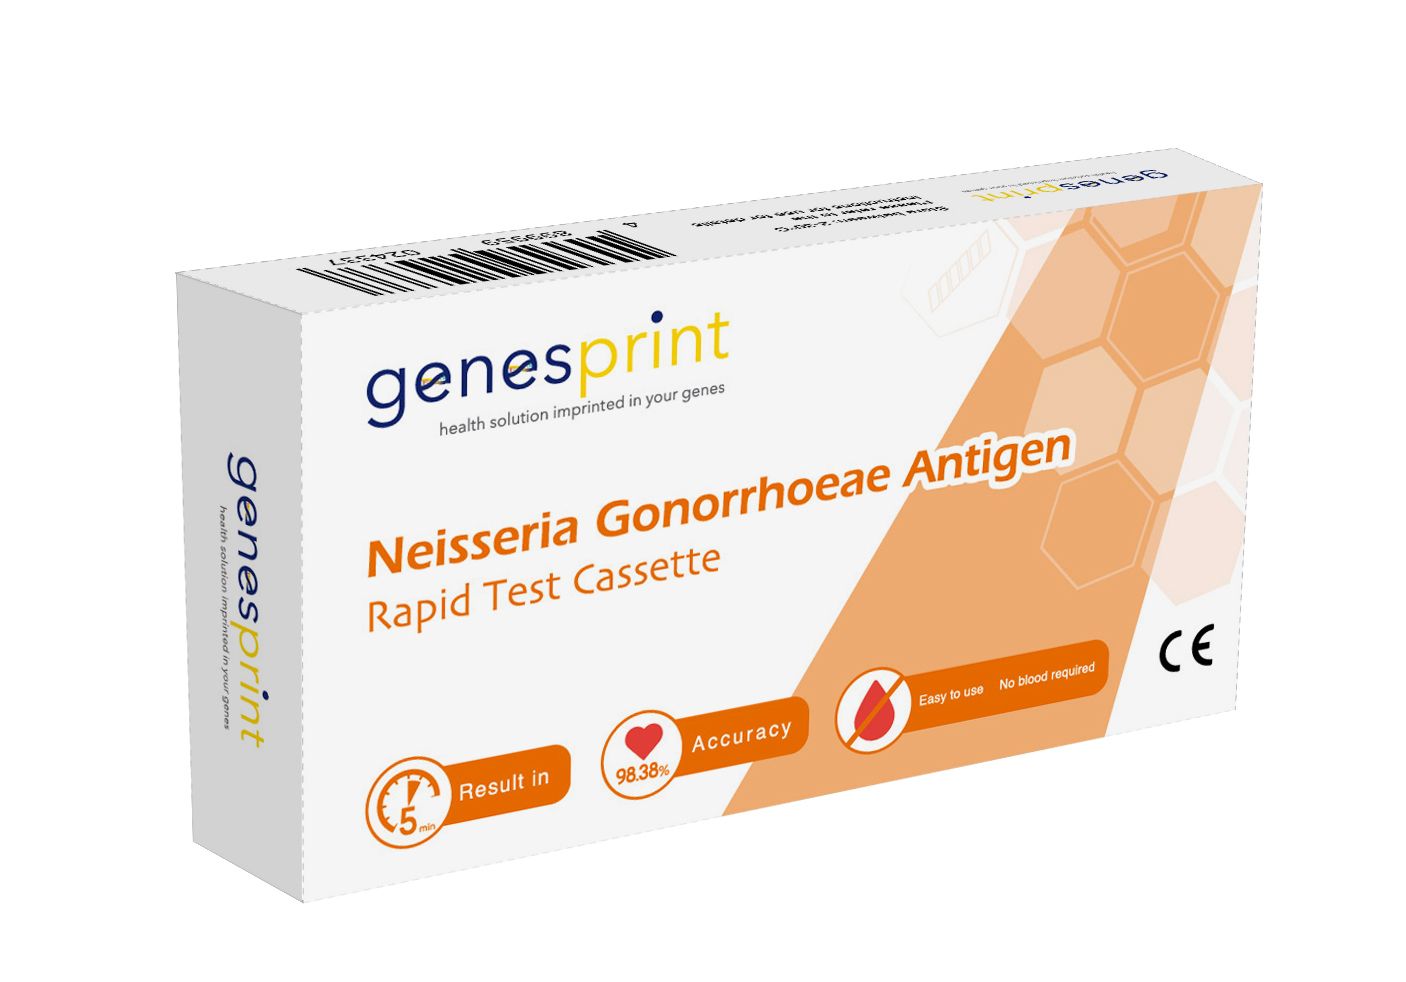 Gonorrhea Rapid Test Kit